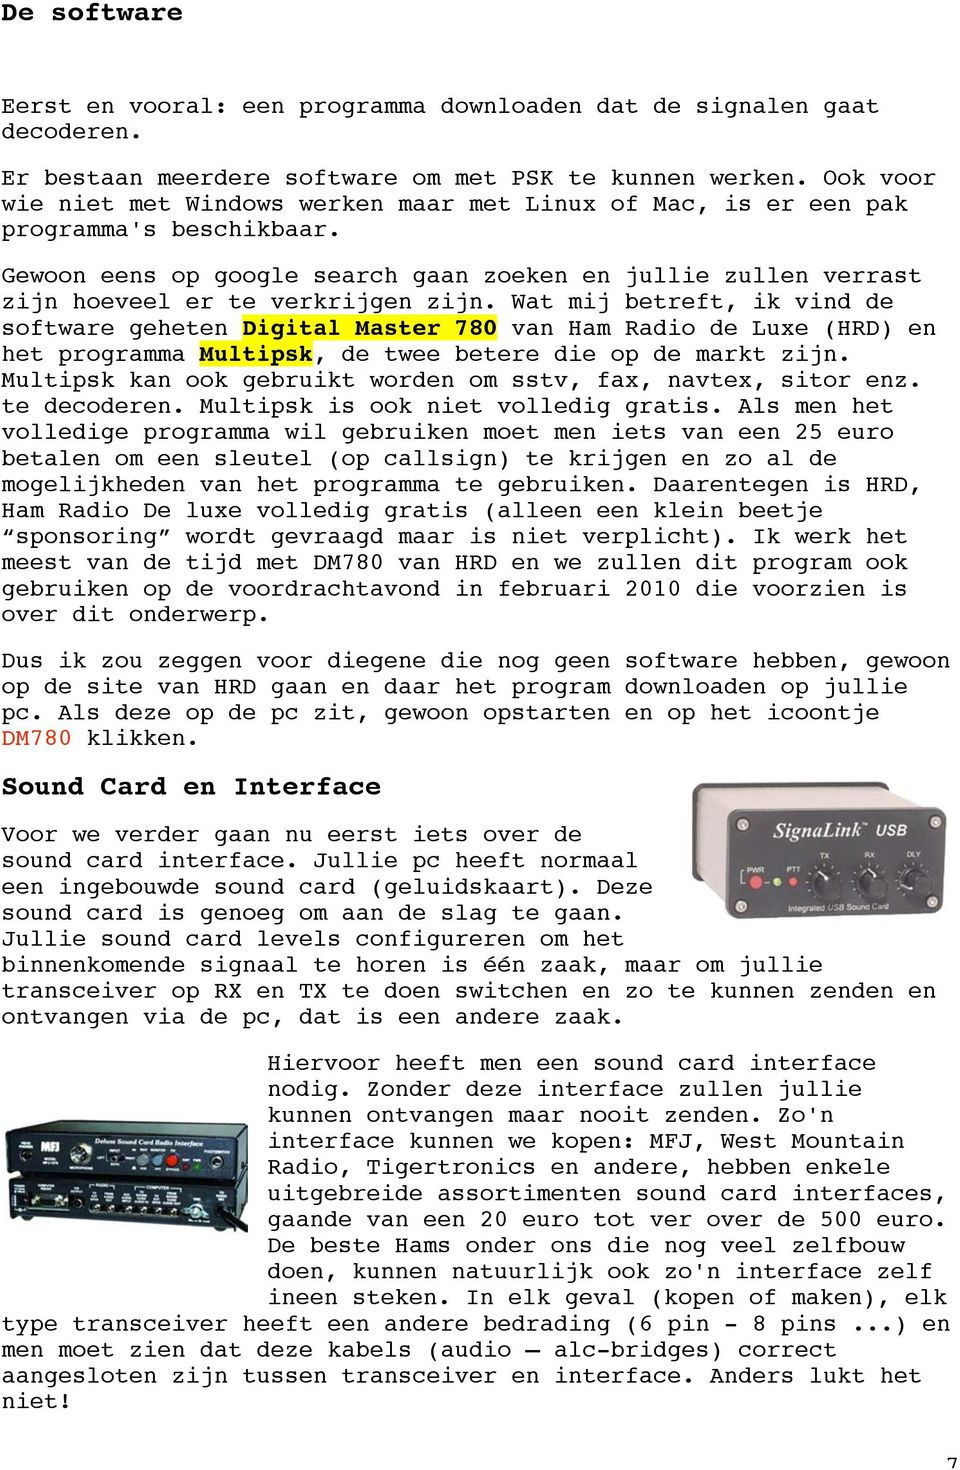 Wat mij betreft, ik vind de software geheten Digital Master 780 van Ham Radio de Luxe (HRD) en het programma Multipsk, de twee betere die op de markt zijn.